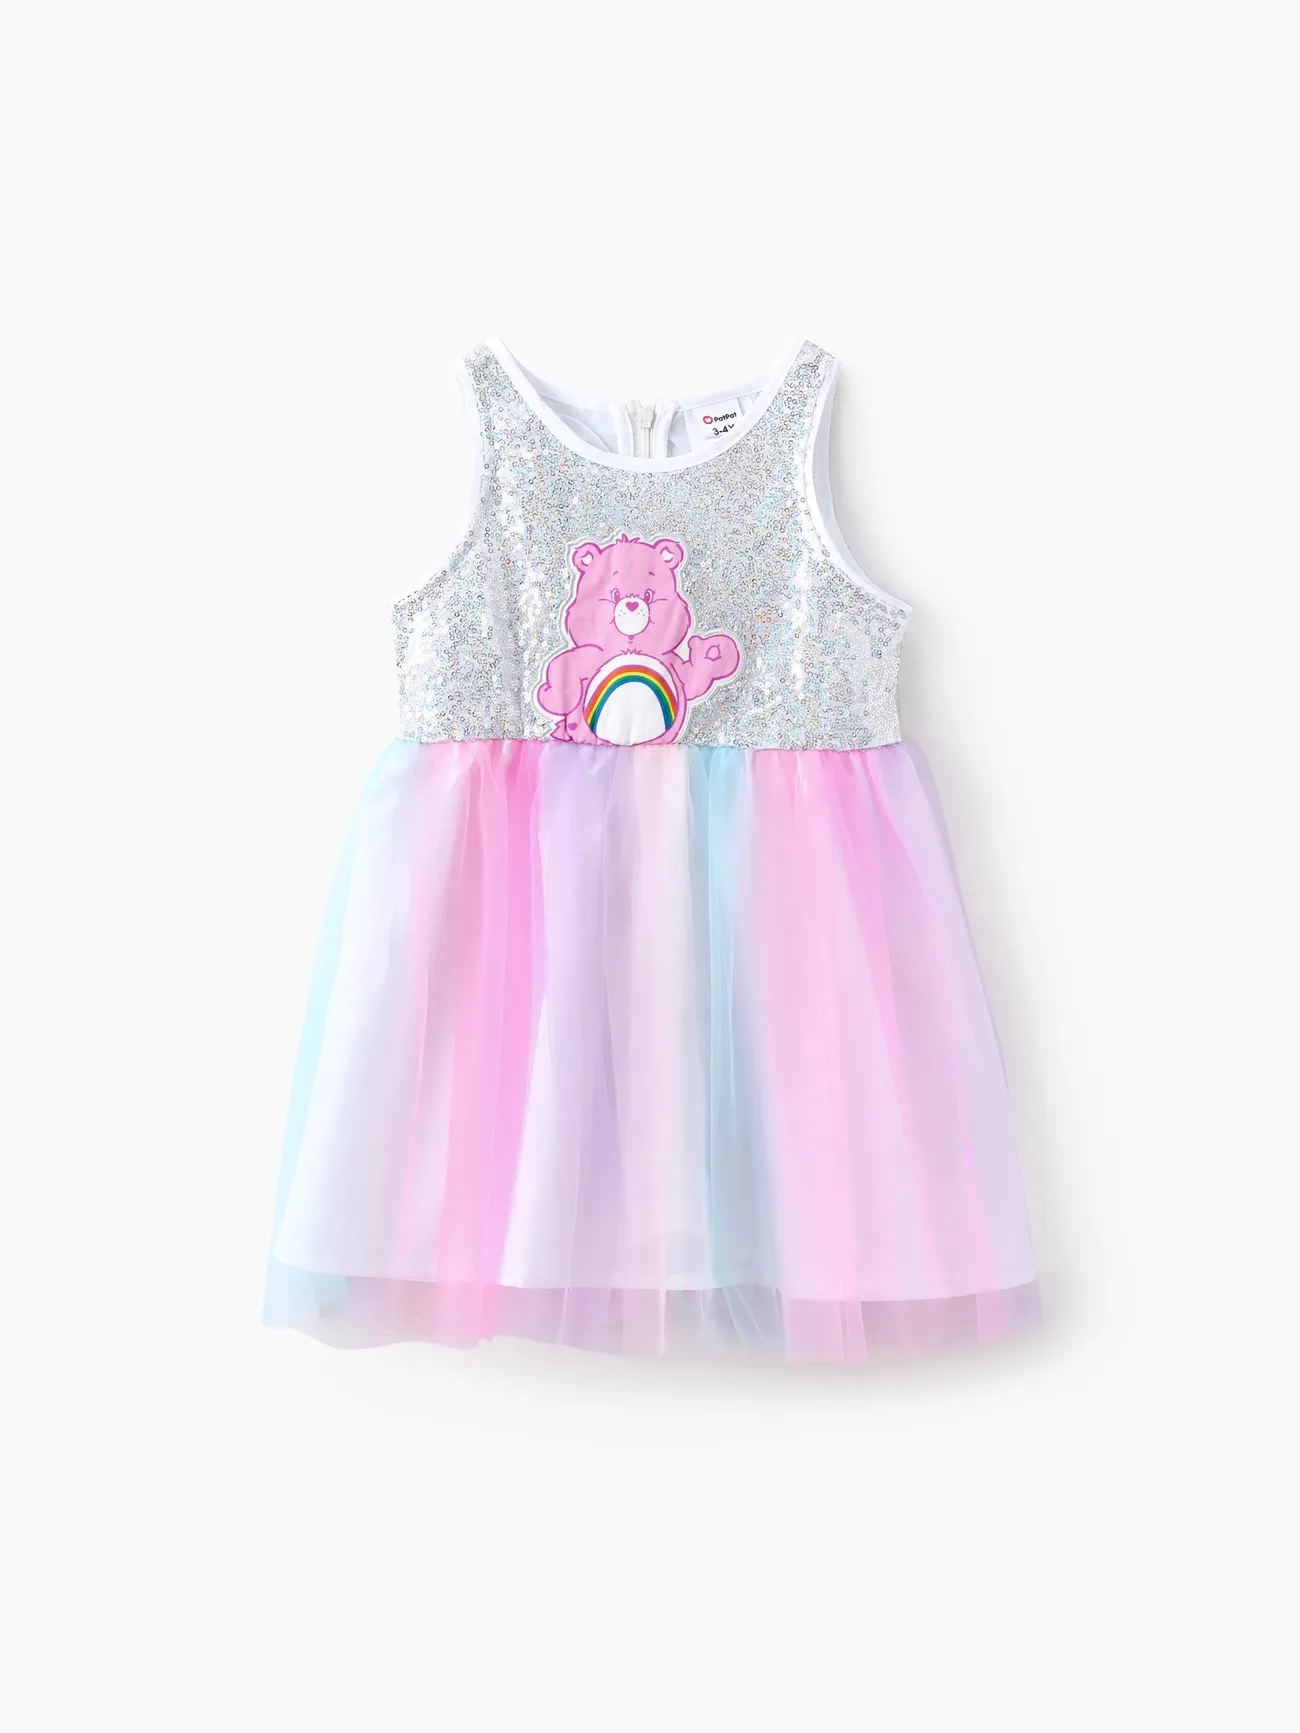 Ositos Cariñositos IP Chica Costura de tela Infantil Vestidos Multicolor big image 1